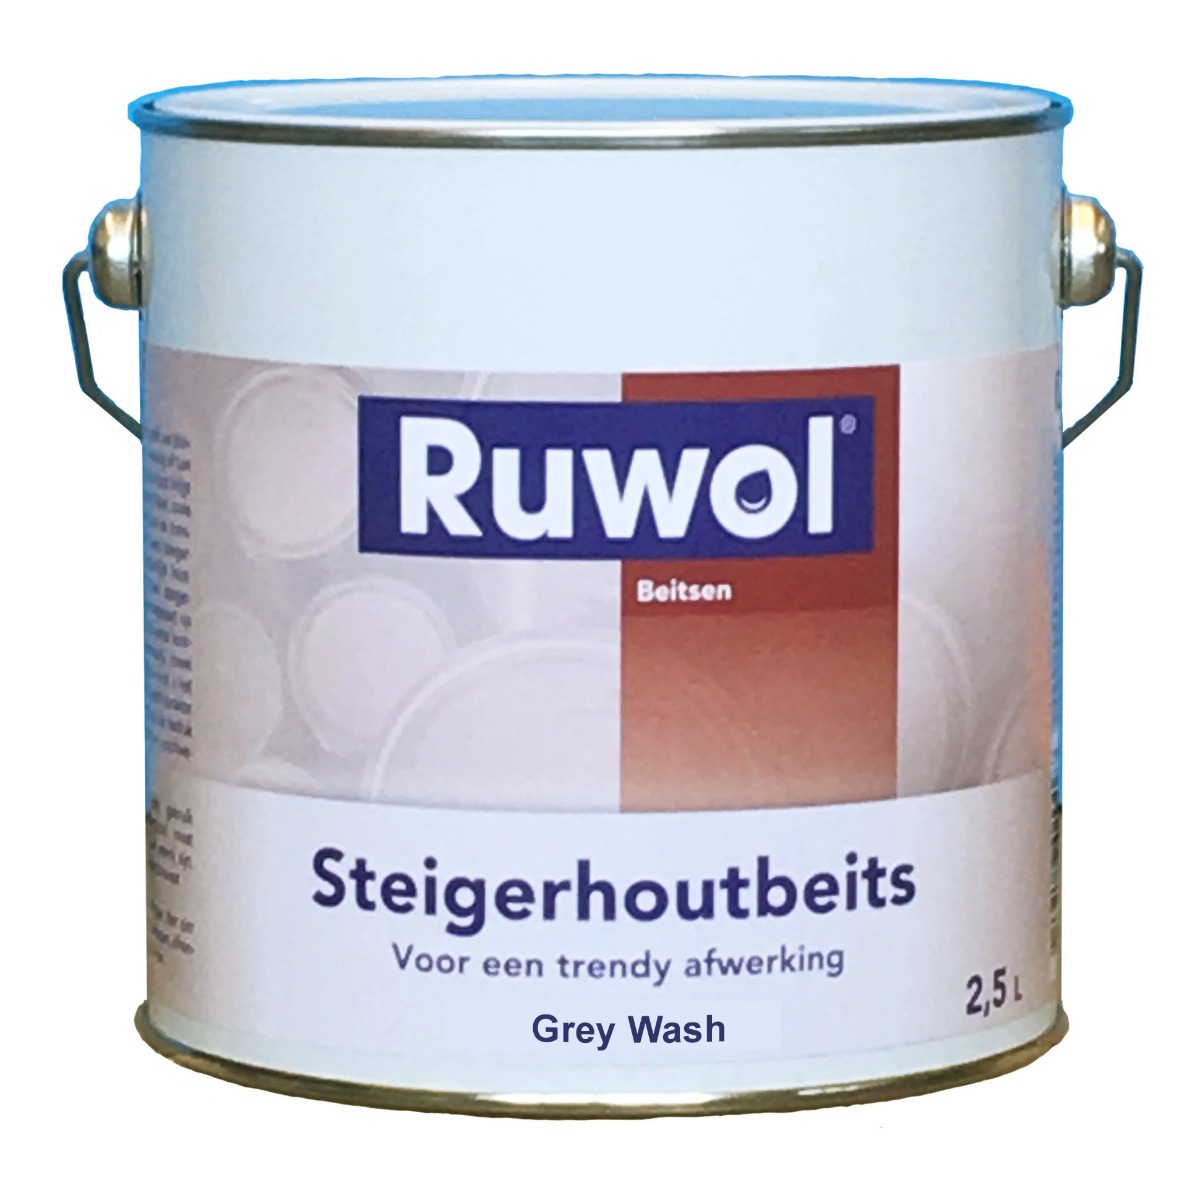 Ruwol Steigerhoutbeits Grey Wash 2,5 liter